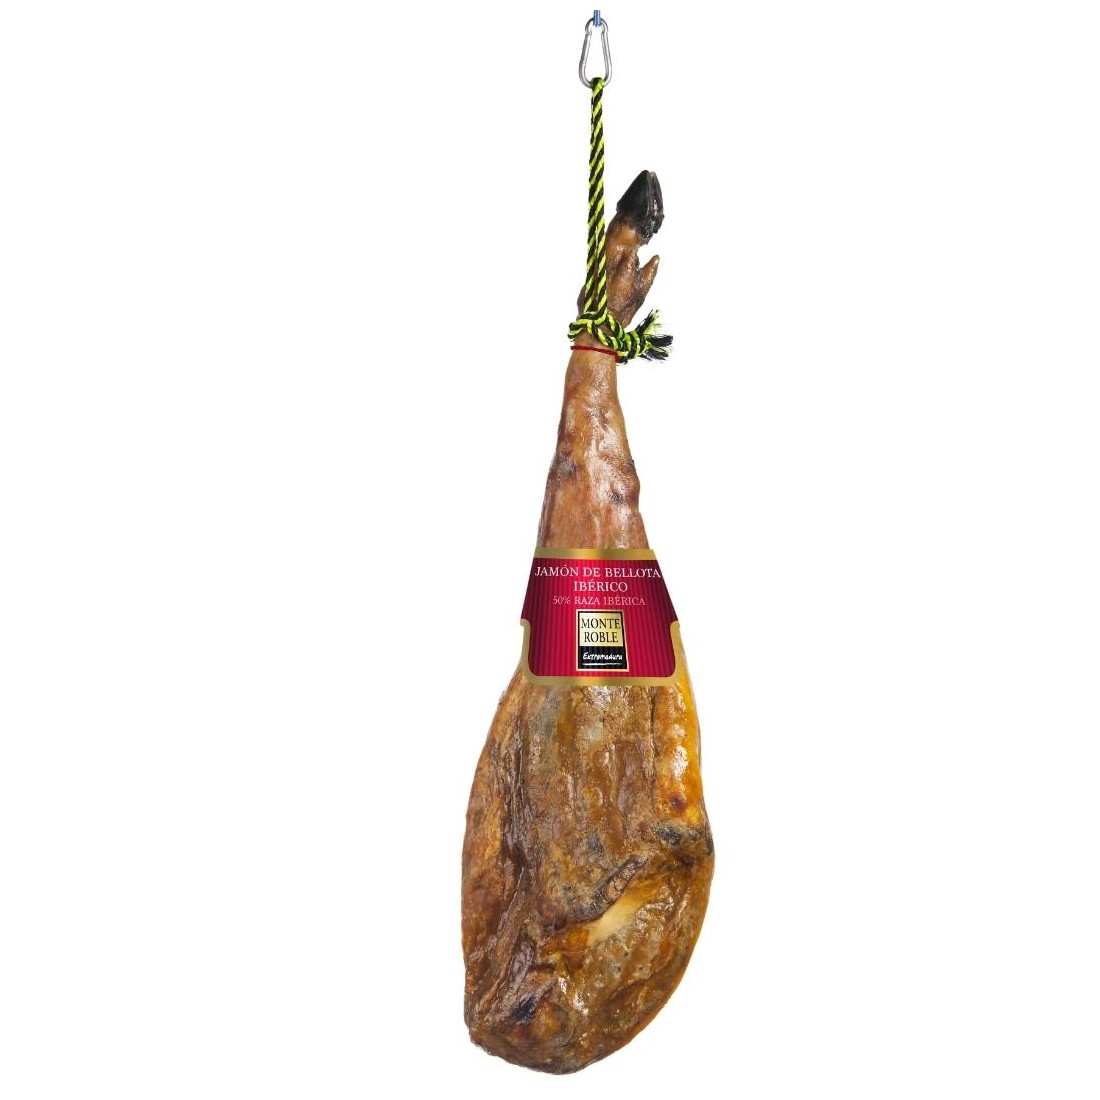 Acorn-fed 50% Iberian Monte Roble Ham